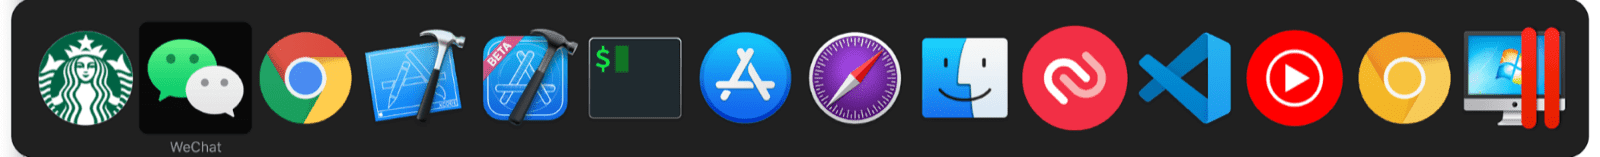 O seletor multitarefa do macOS inclui miniapps junto com o app normal do macOS.